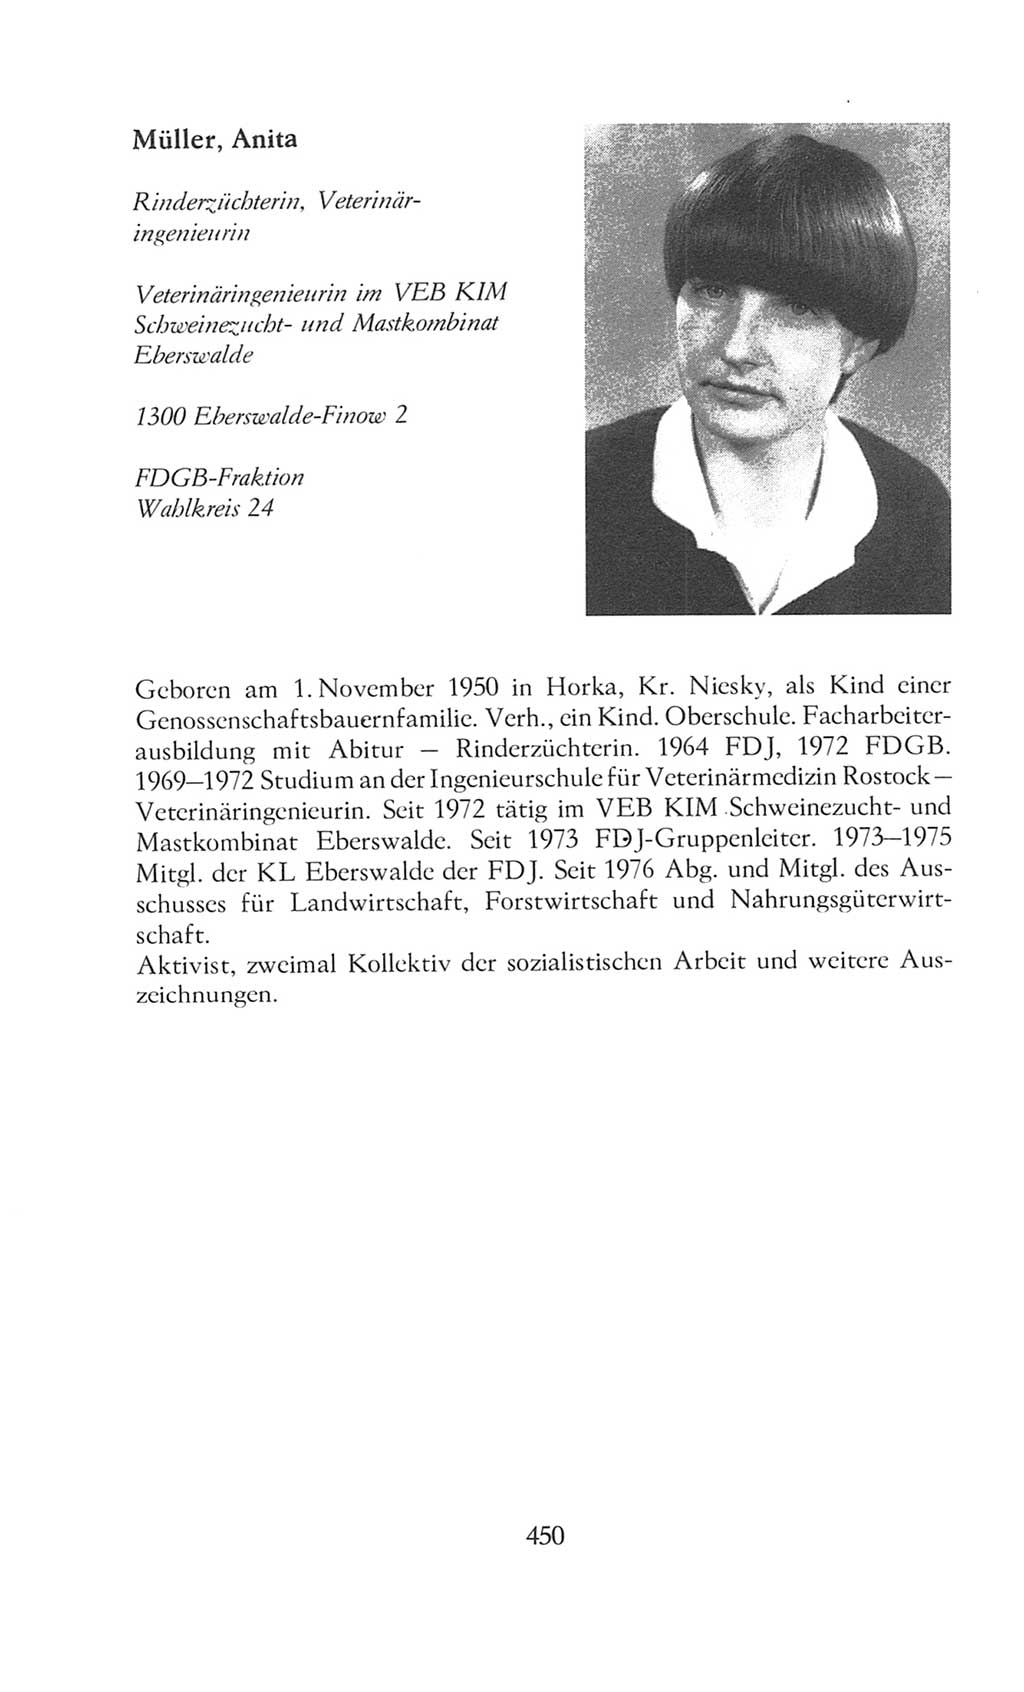 Volkskammer (VK) der Deutschen Demokratischen Republik (DDR), 8. Wahlperiode 1981-1986, Seite 450 (VK. DDR 8. WP. 1981-1986, S. 450)